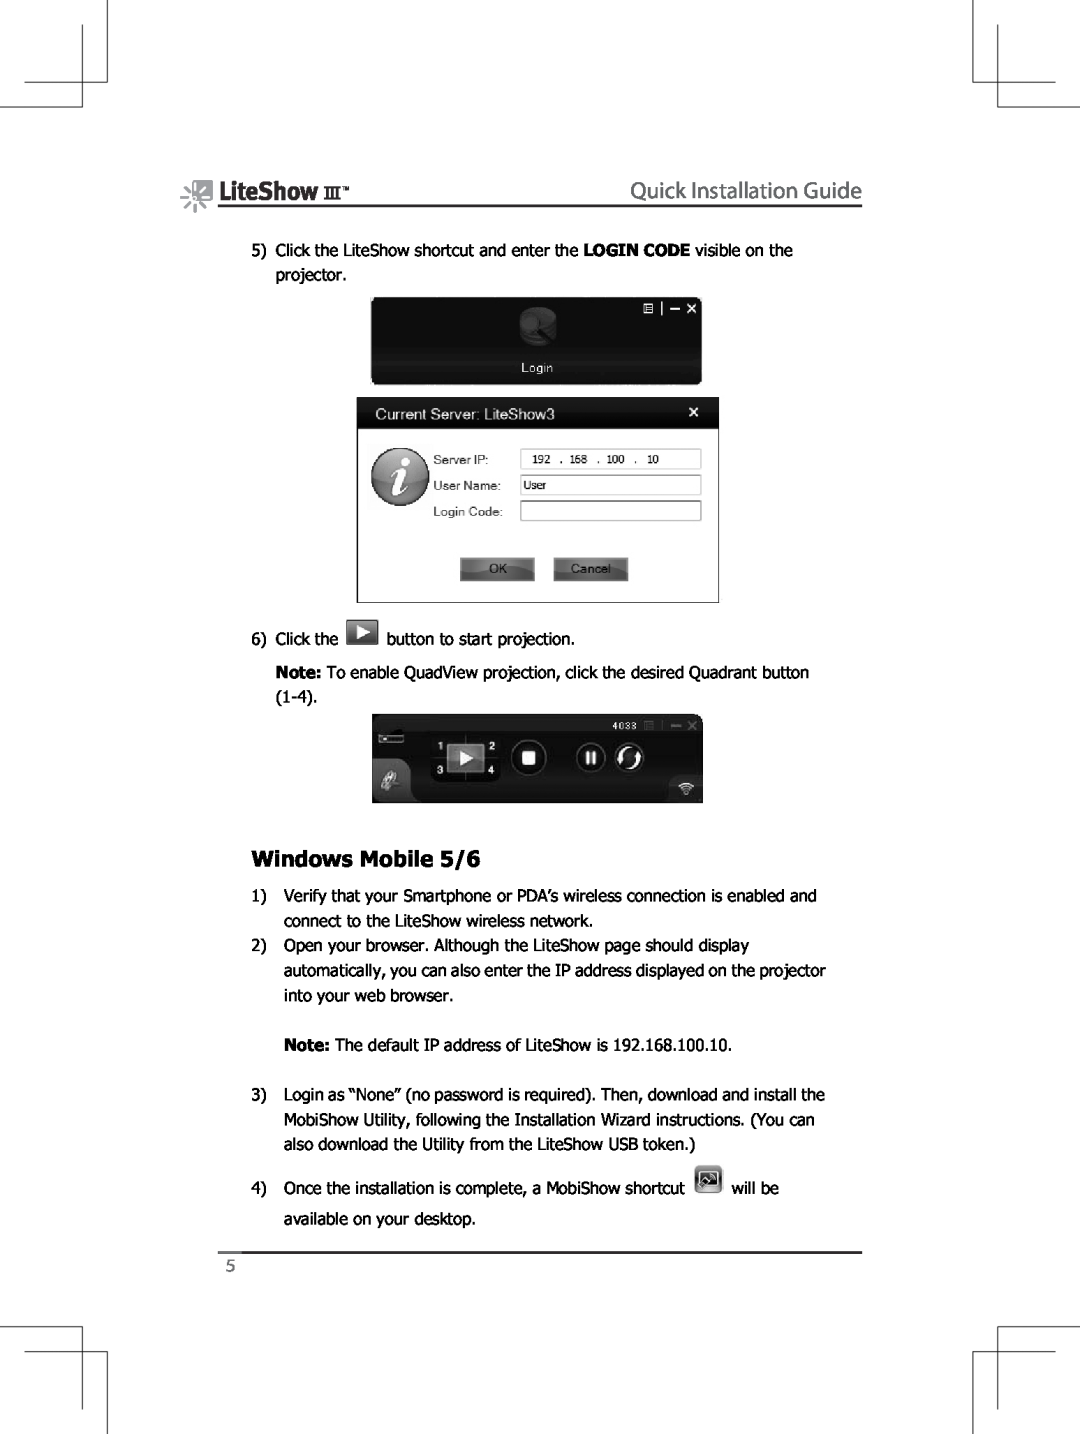 InFocus INLITESHOW3 manual Windows Mobile 5/6, Quick Installation Guide 